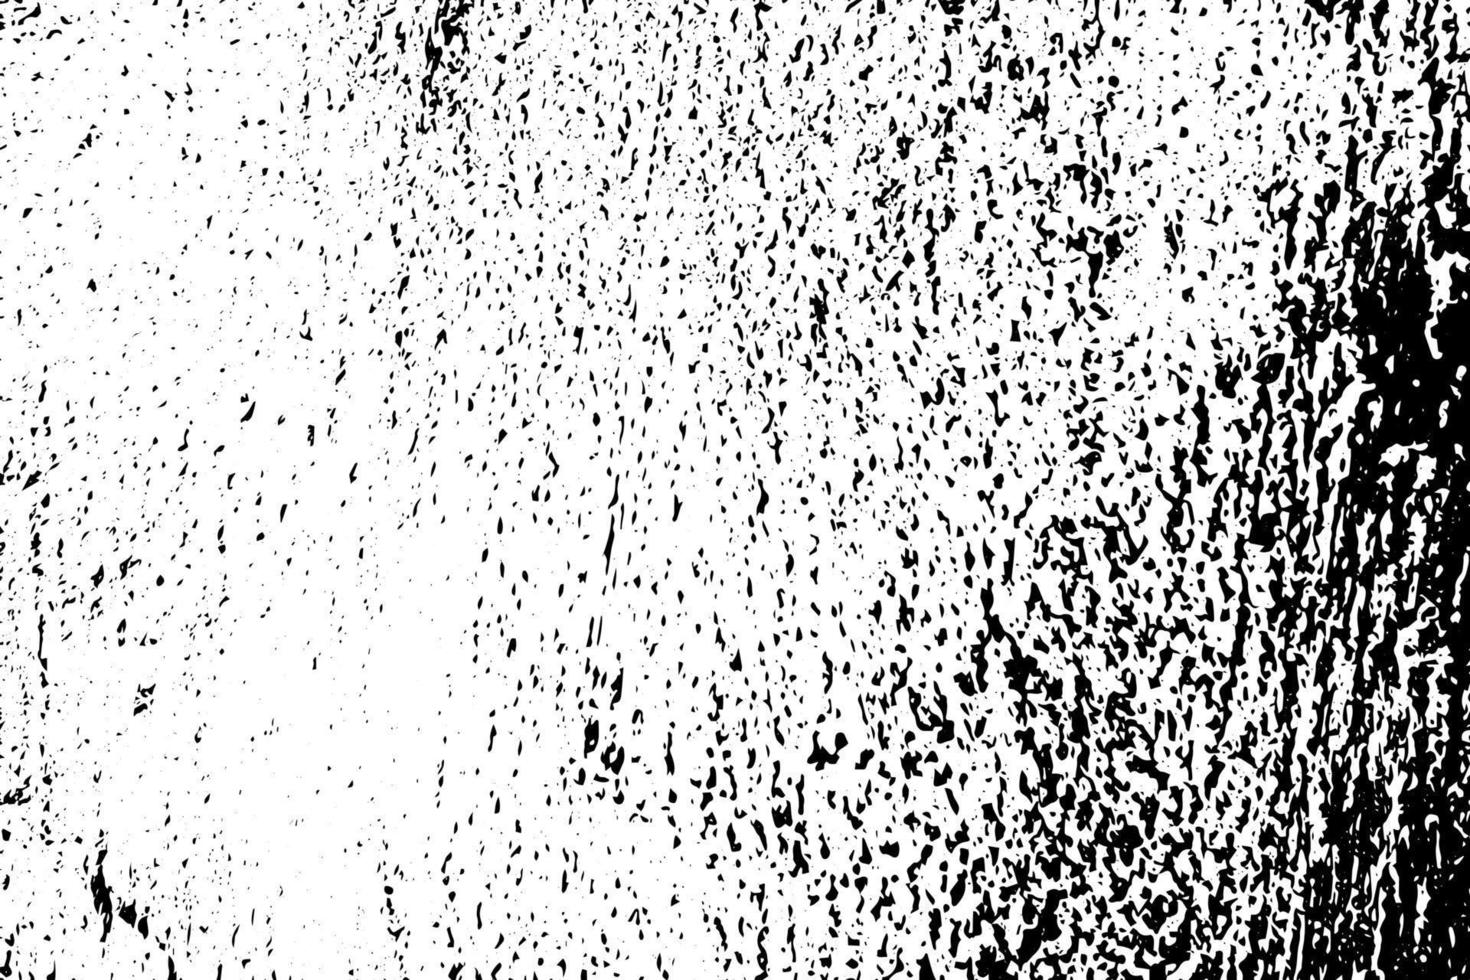 abstrato poeira partícula e poeira grão textura em branco fundo vetor